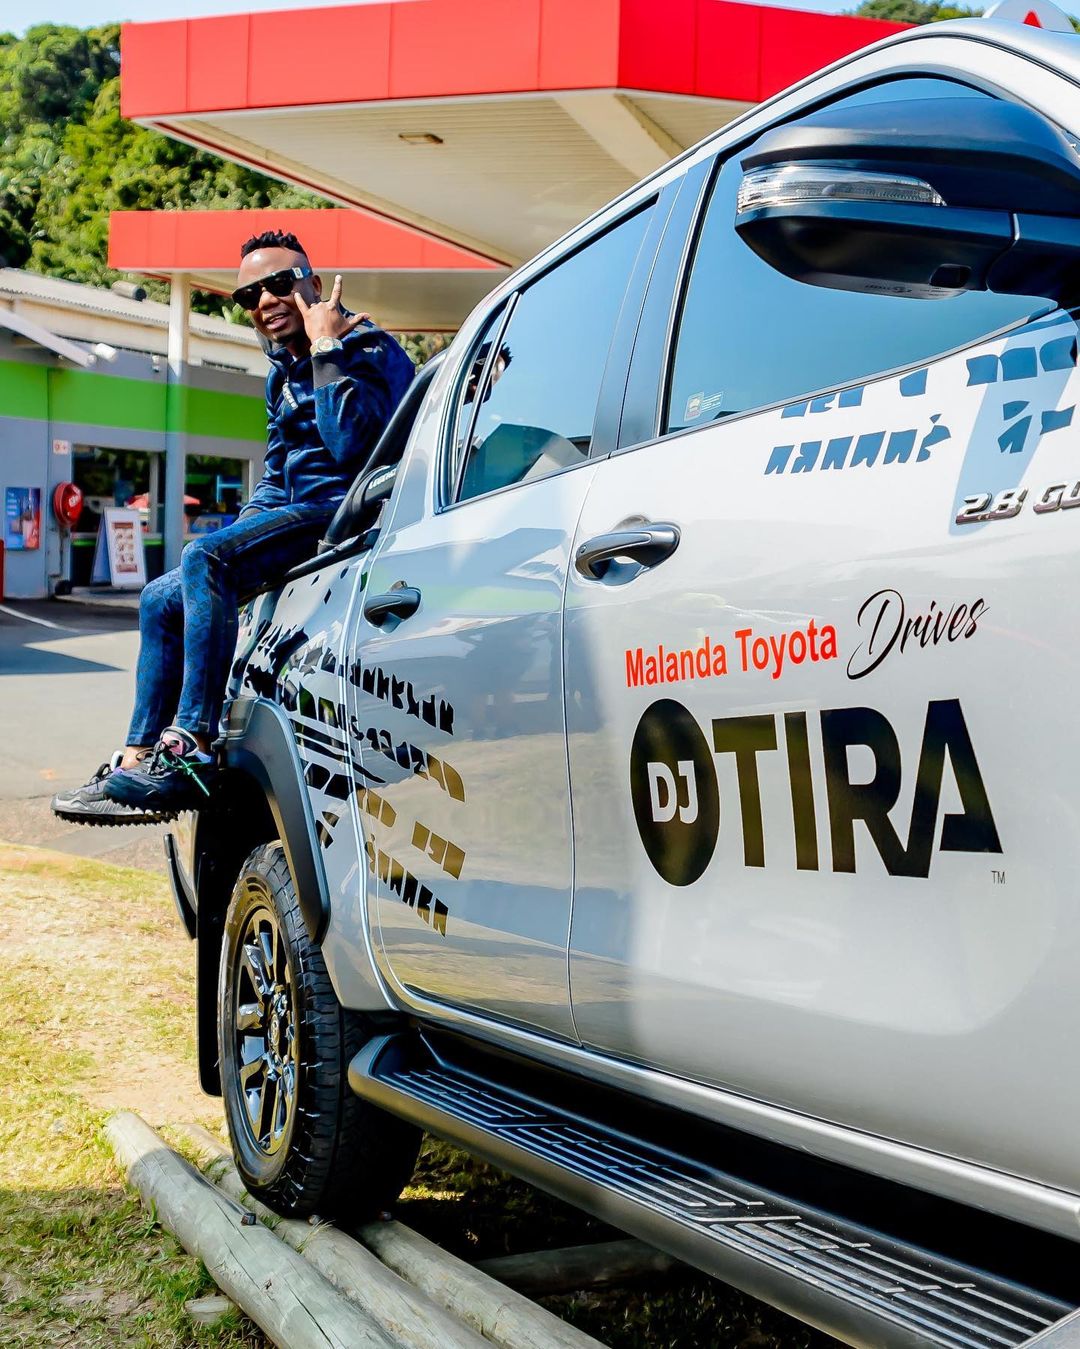 Dj Tira celebrates his new car, a Toyota Bakkie. Image: Instargam/DJ Tira